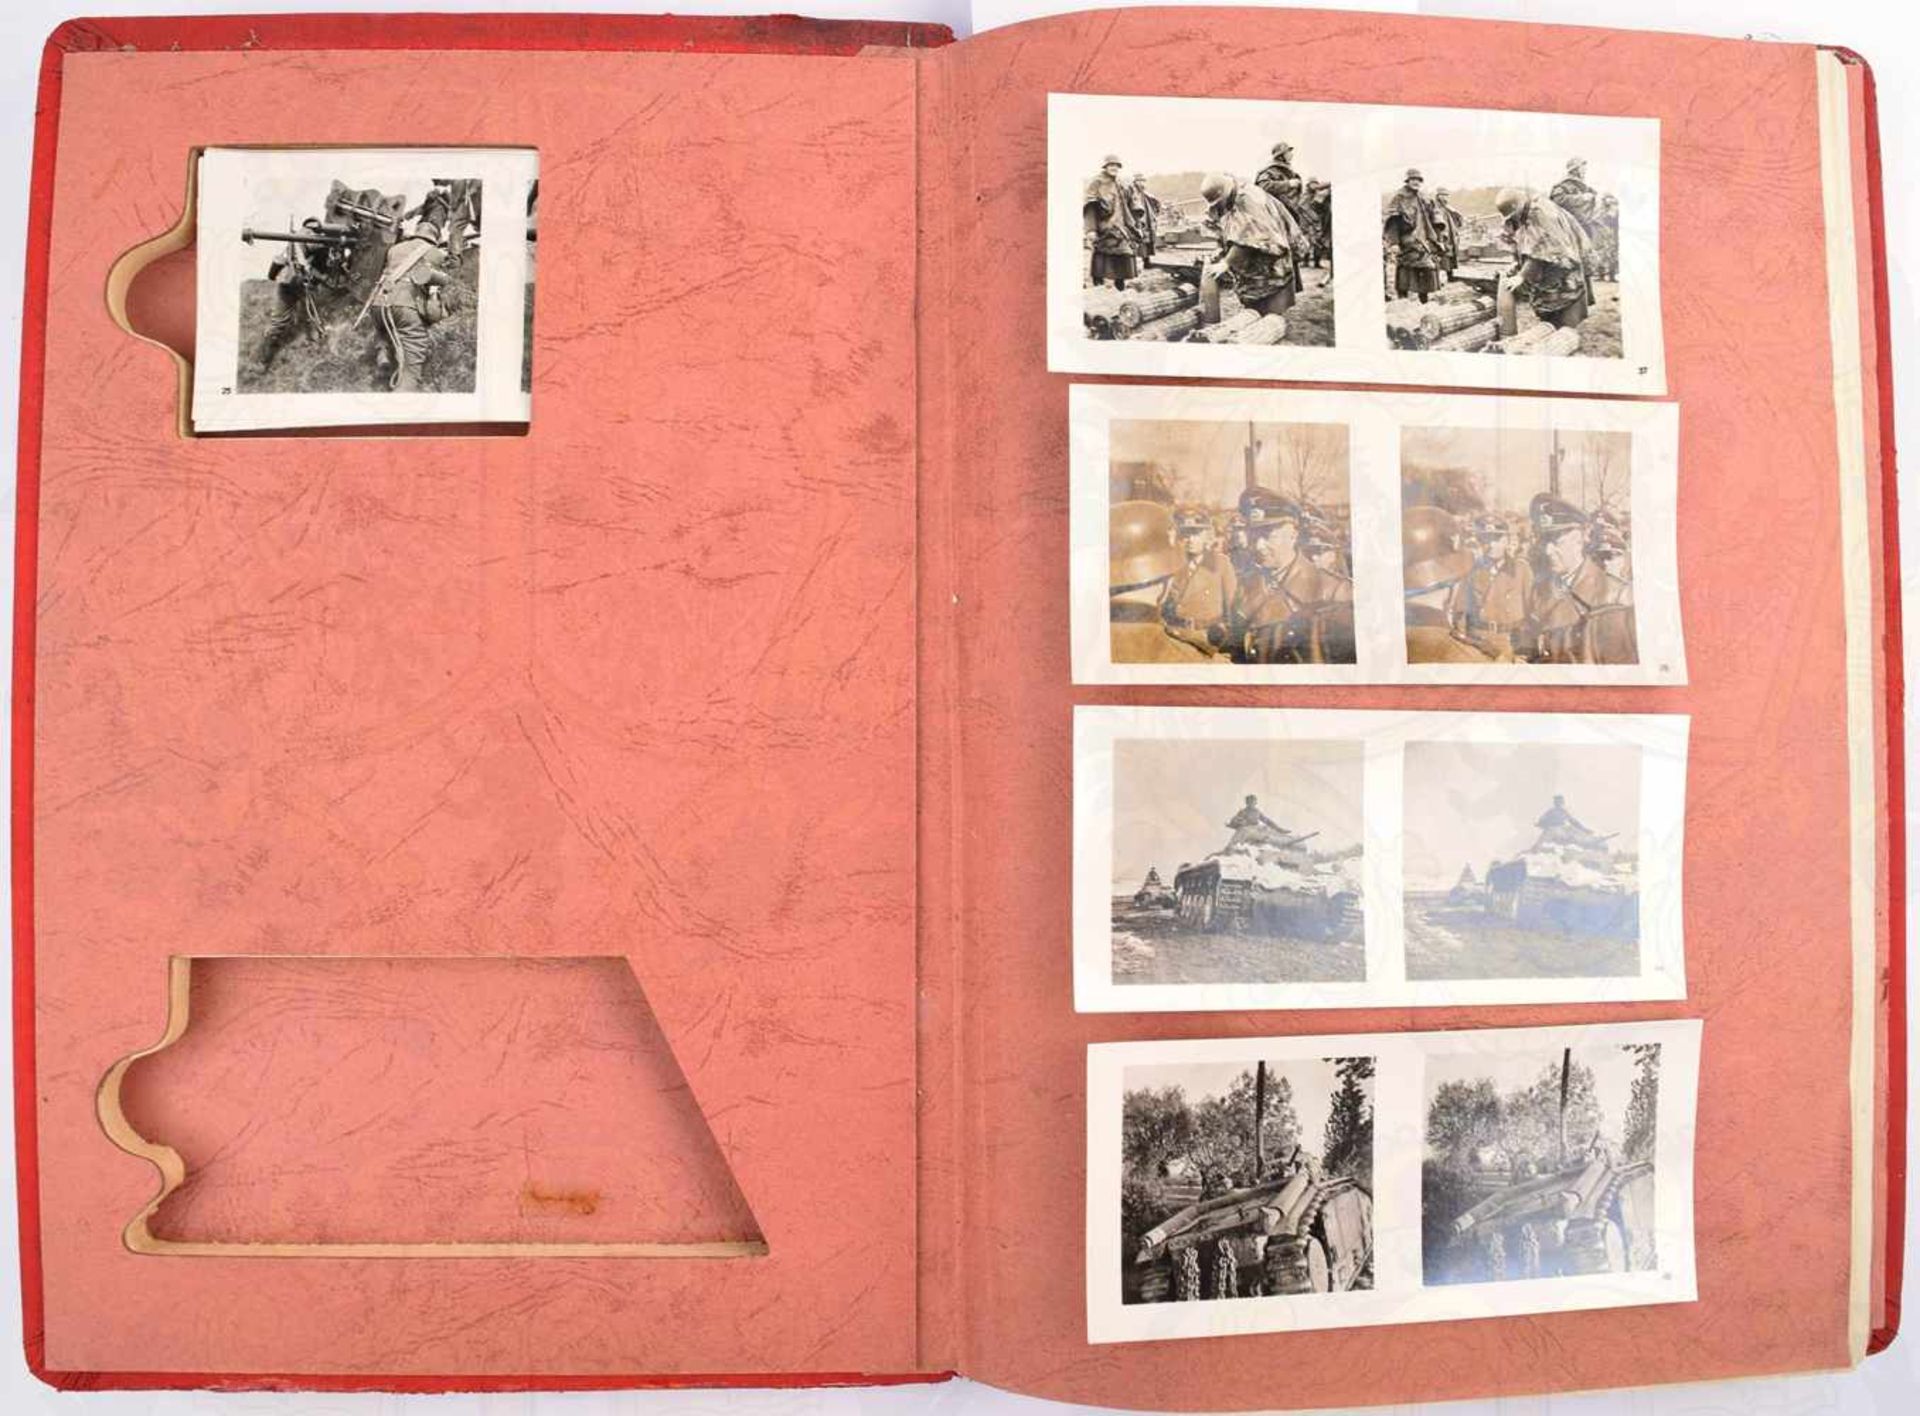 DER KAMPF IM WESTEN, Schönstein-Verlag, München 1940, 80 S., kpl. m. 100 Raumbildern u. 8 farbigen - Bild 2 aus 2